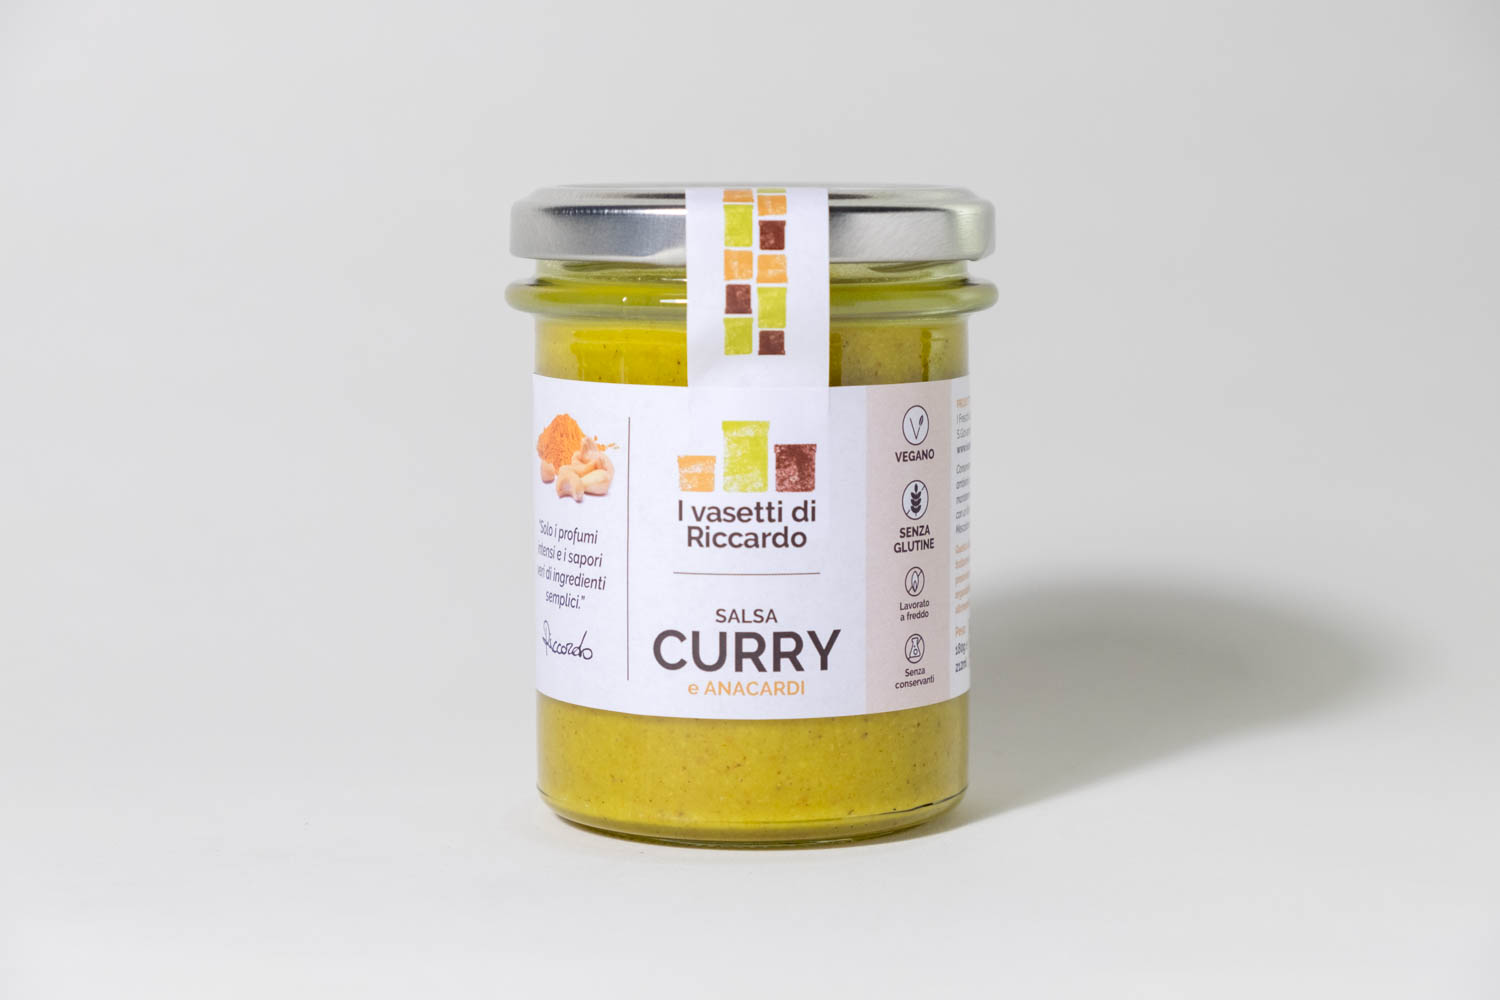 Immagine che presenta un vasetto di salsa di curry e anacardi.